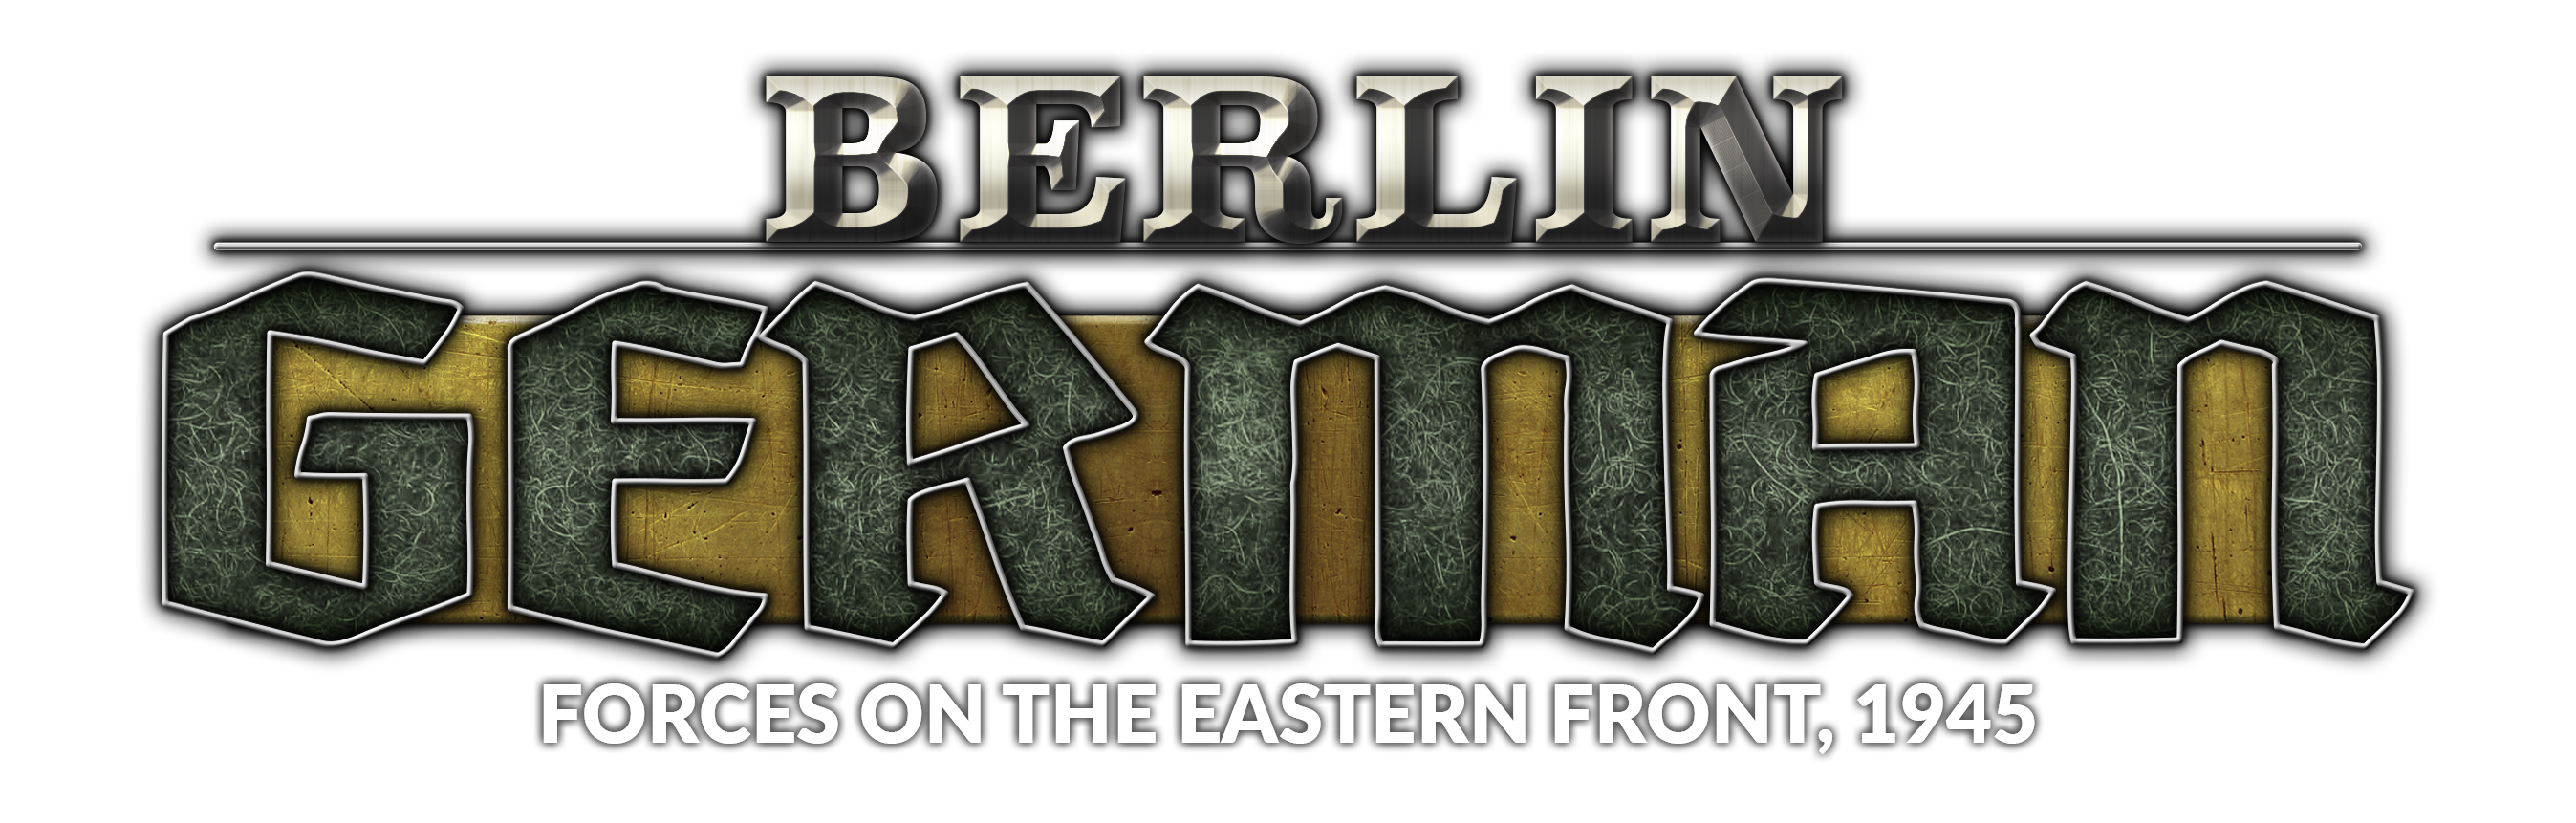 Berlin: Germans Pre-orders